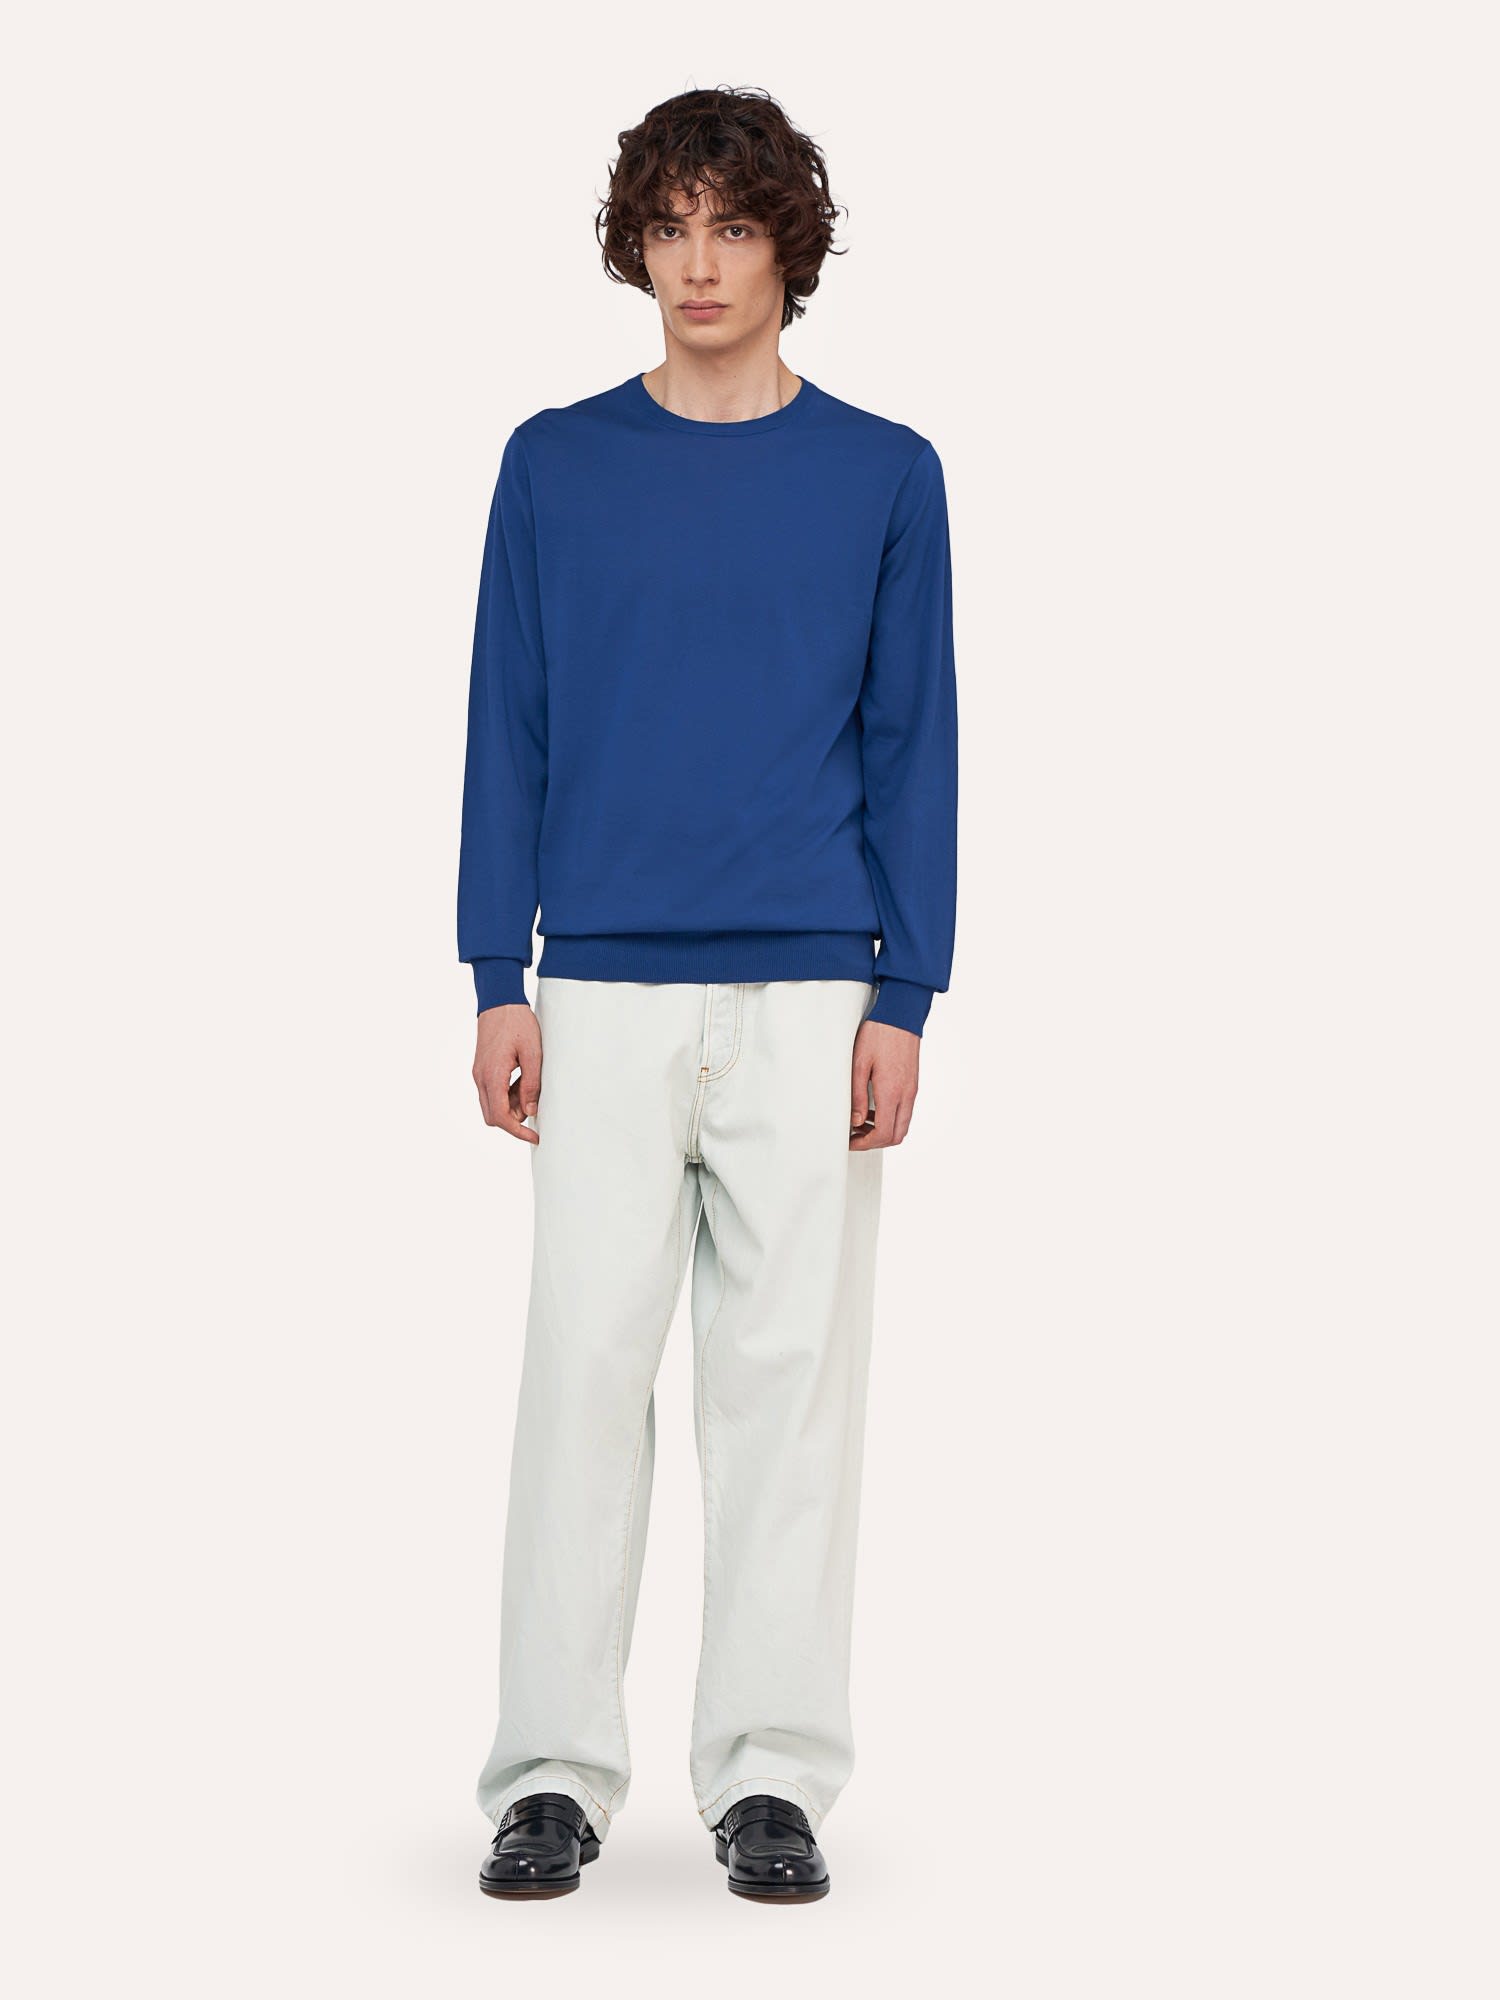 Ballantyne Ultralight Cotton Sweater In Blue